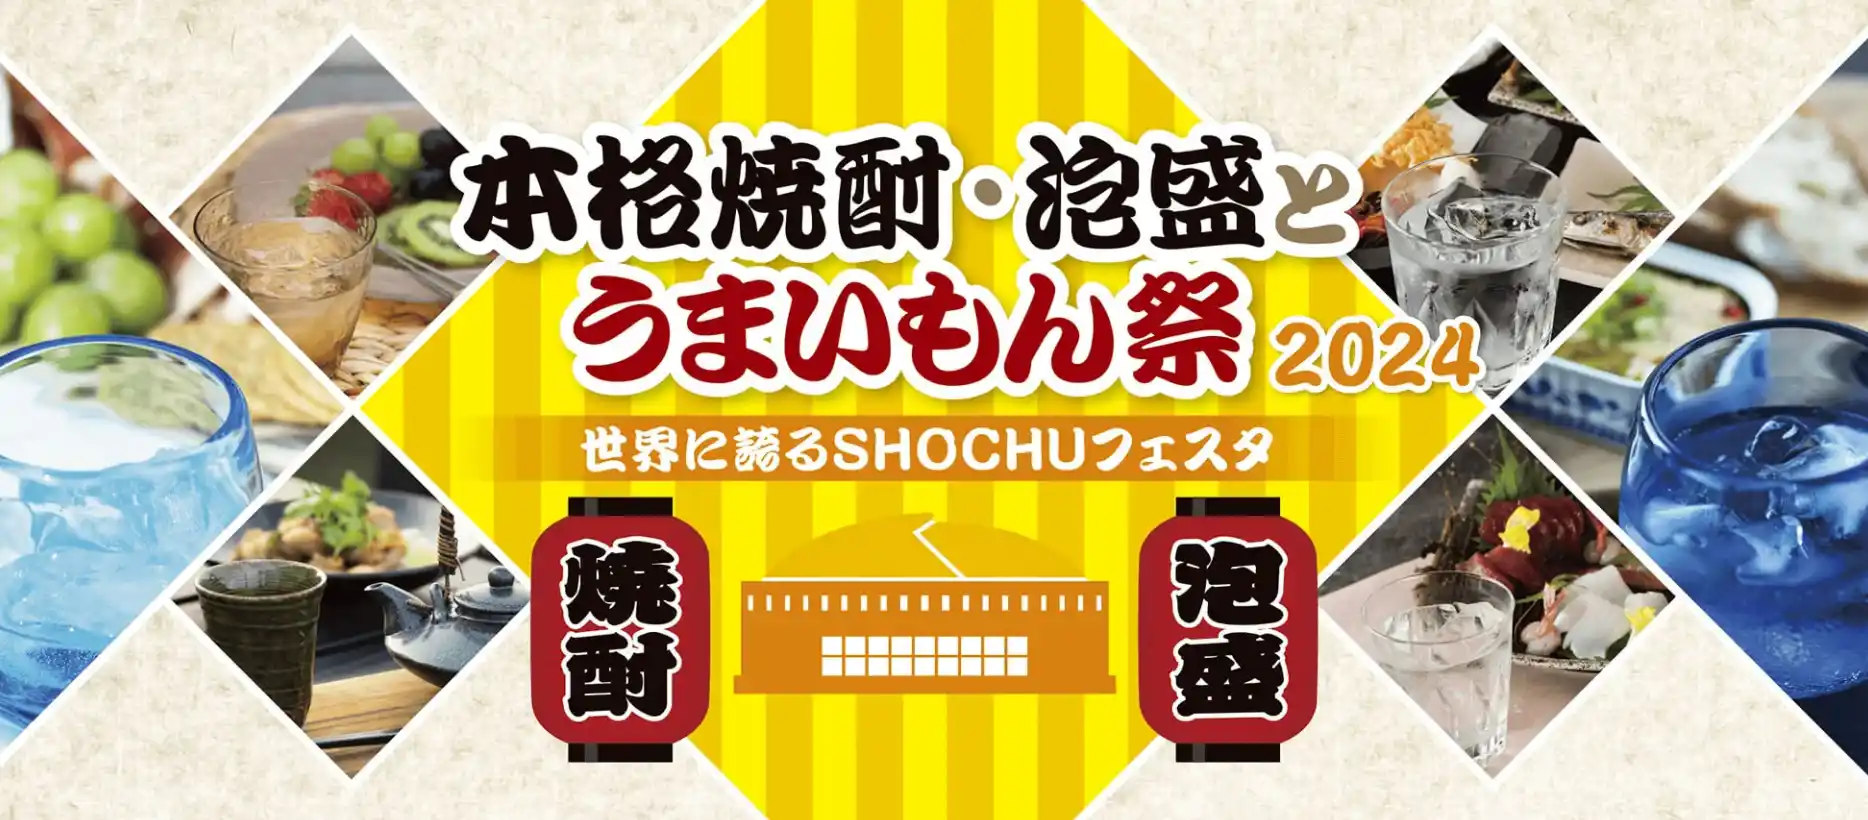 本格焼酎・泡盛とうまいもん祭 2024 開催